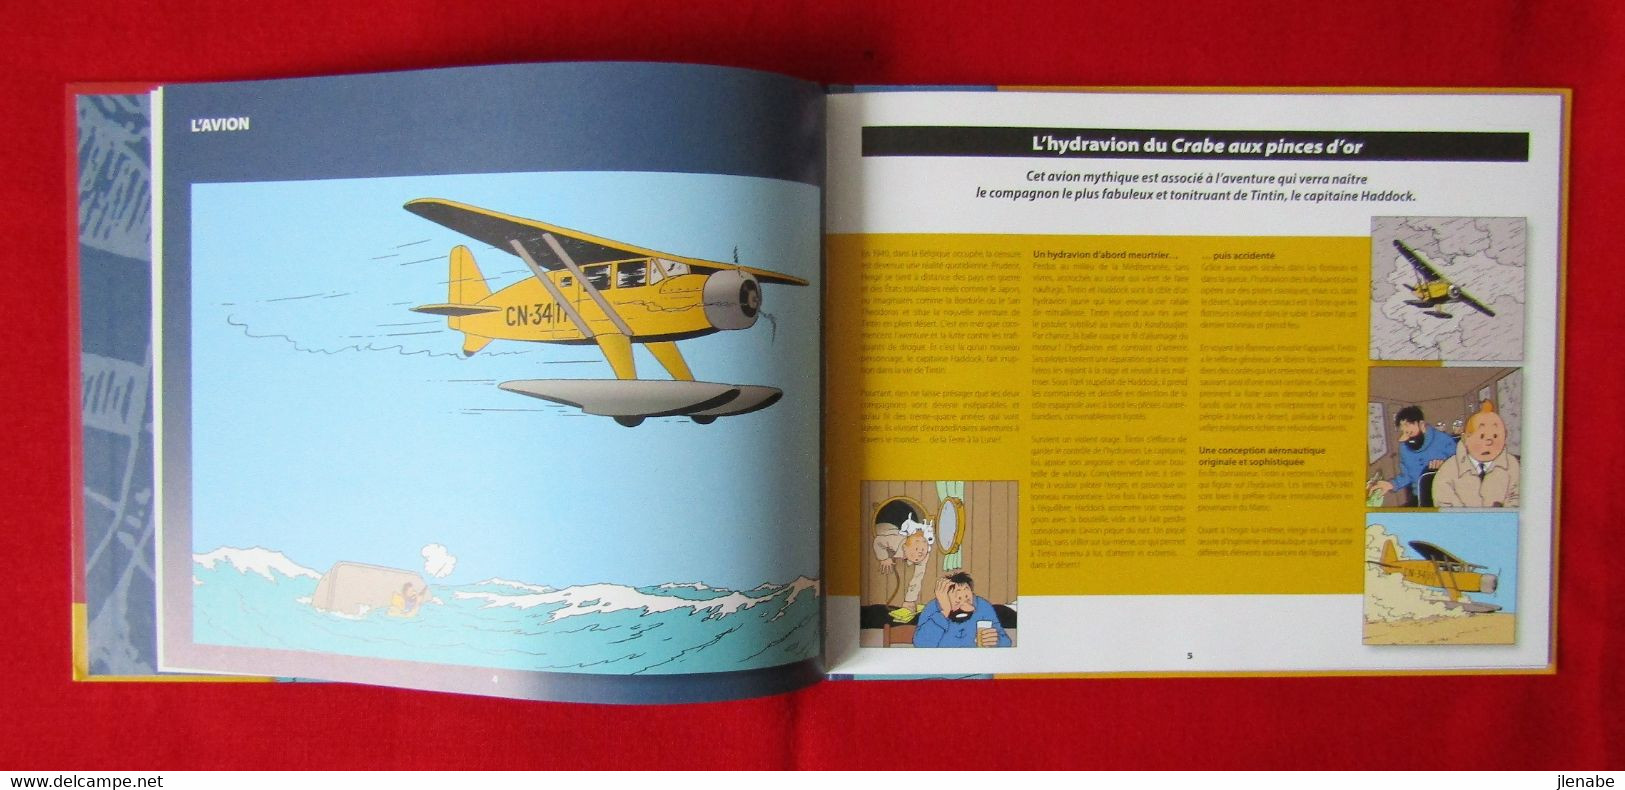 Tintin avion n°1 Le crabe aux pinces d'or + carnet + autres pub